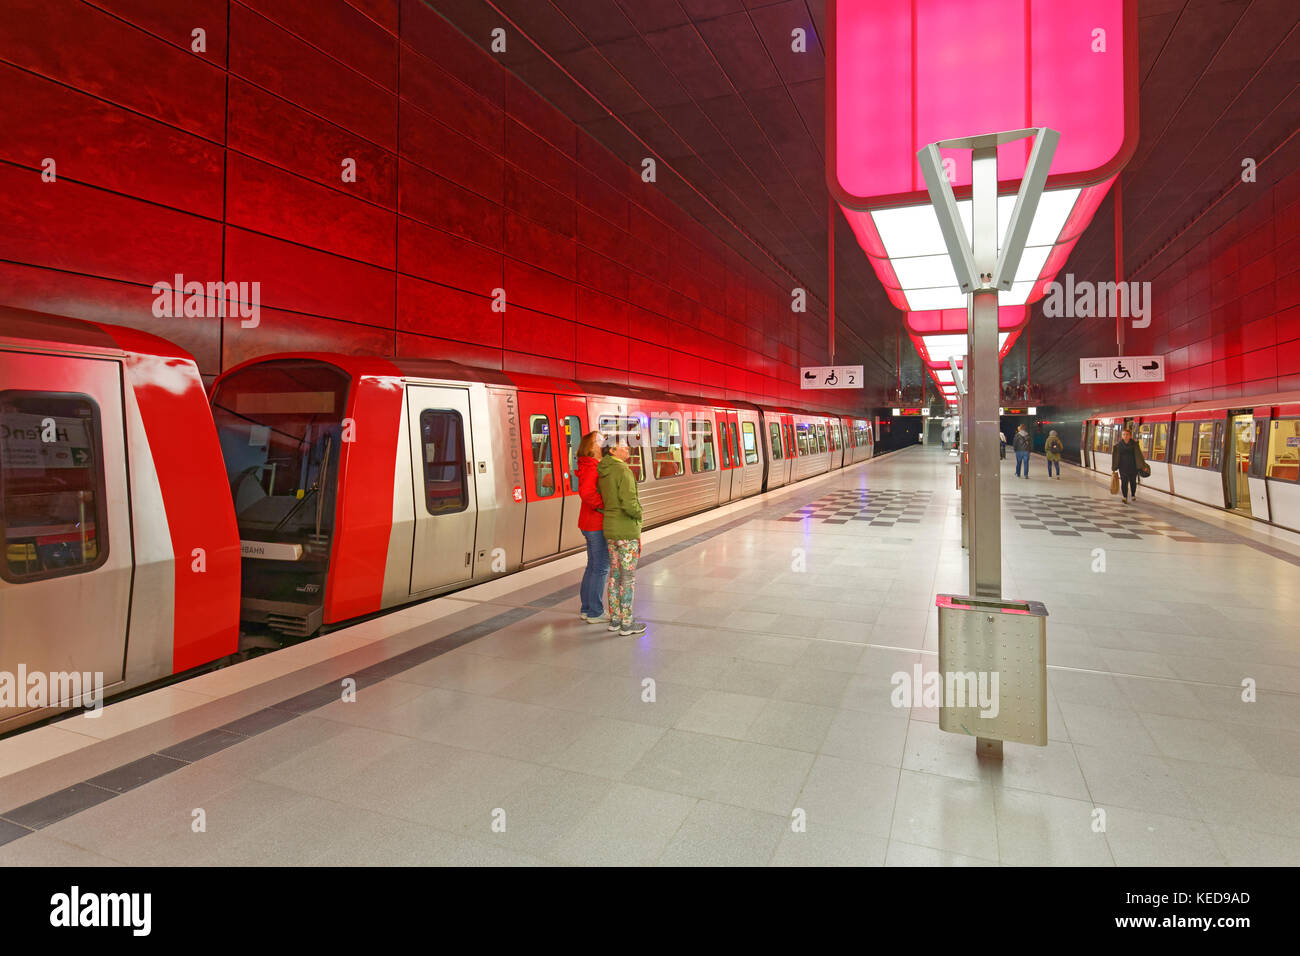 Lichtinstallation im themetro Station hafencity Universität u4, Hamburg, Deutschland, Europa Stockfoto